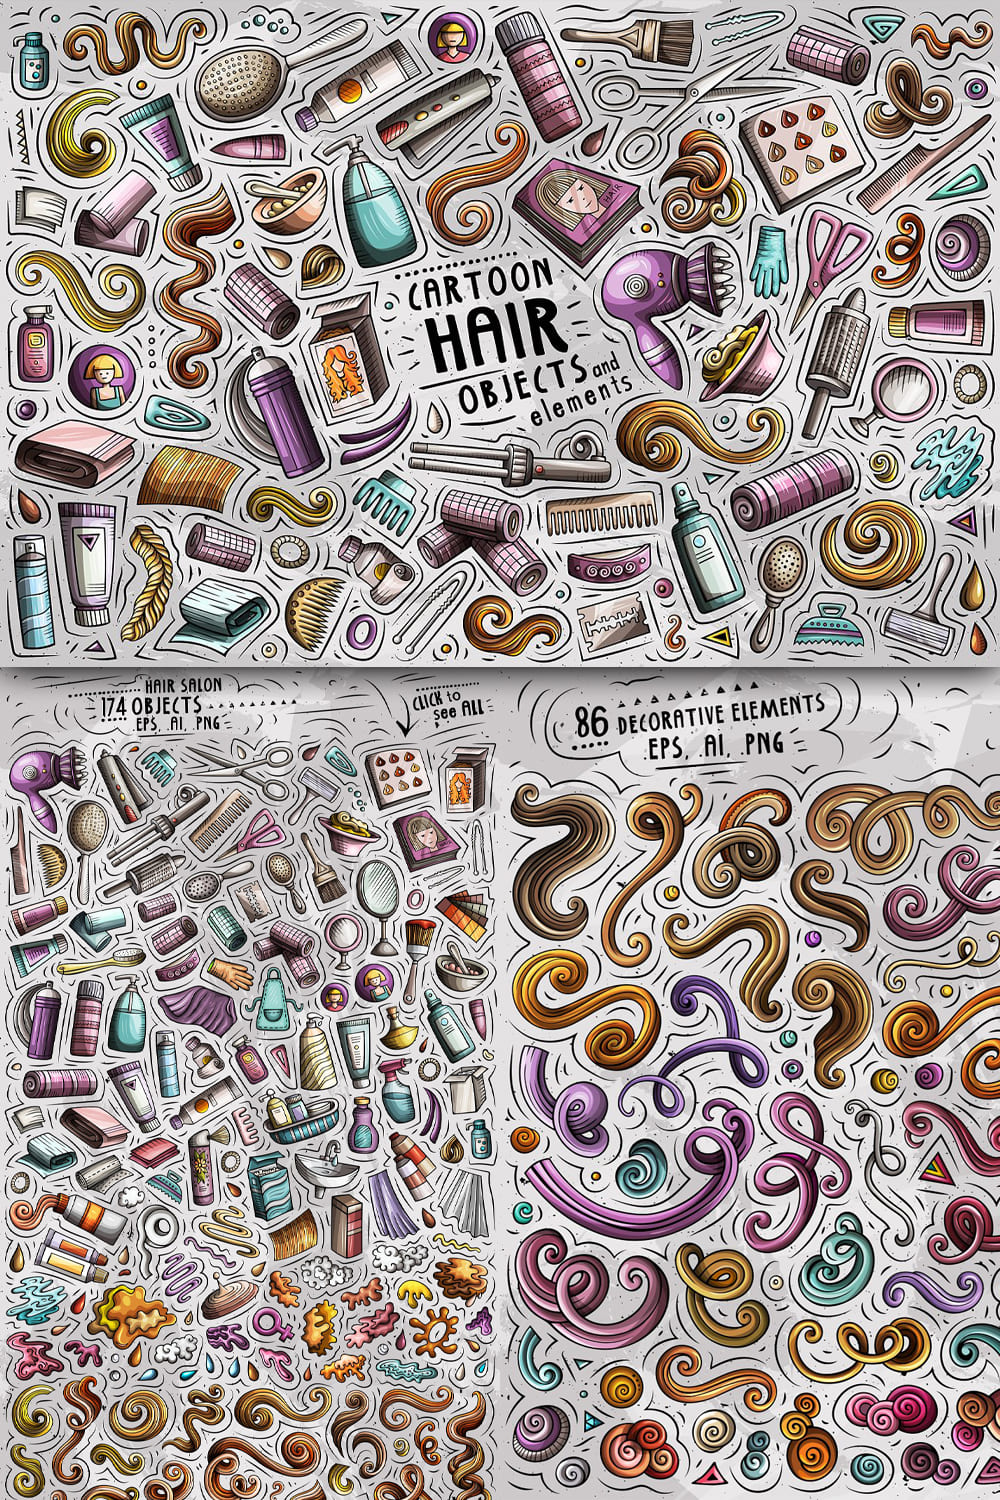 Hair Salon Cartoon Objects Set Pinterest 1000 1500.